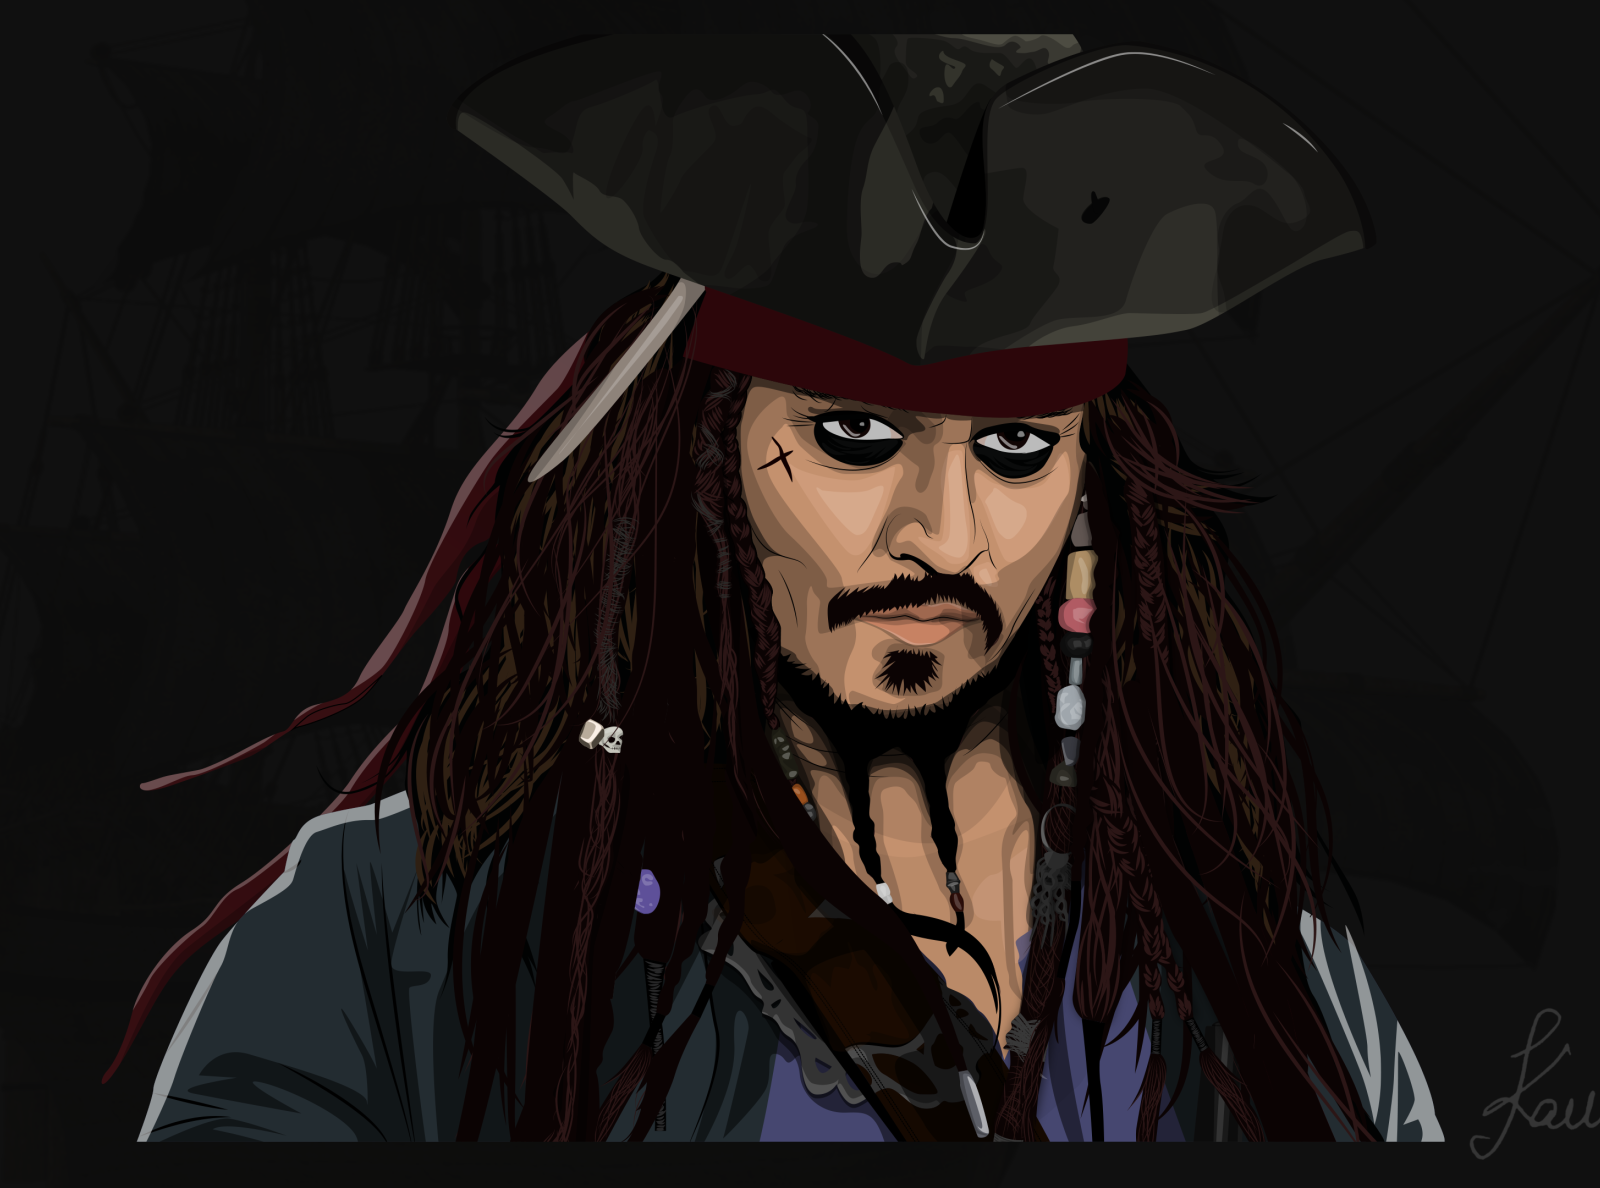 Captain Jack Sparrow Vector Art by Kawshik Ghosh on Dribbble